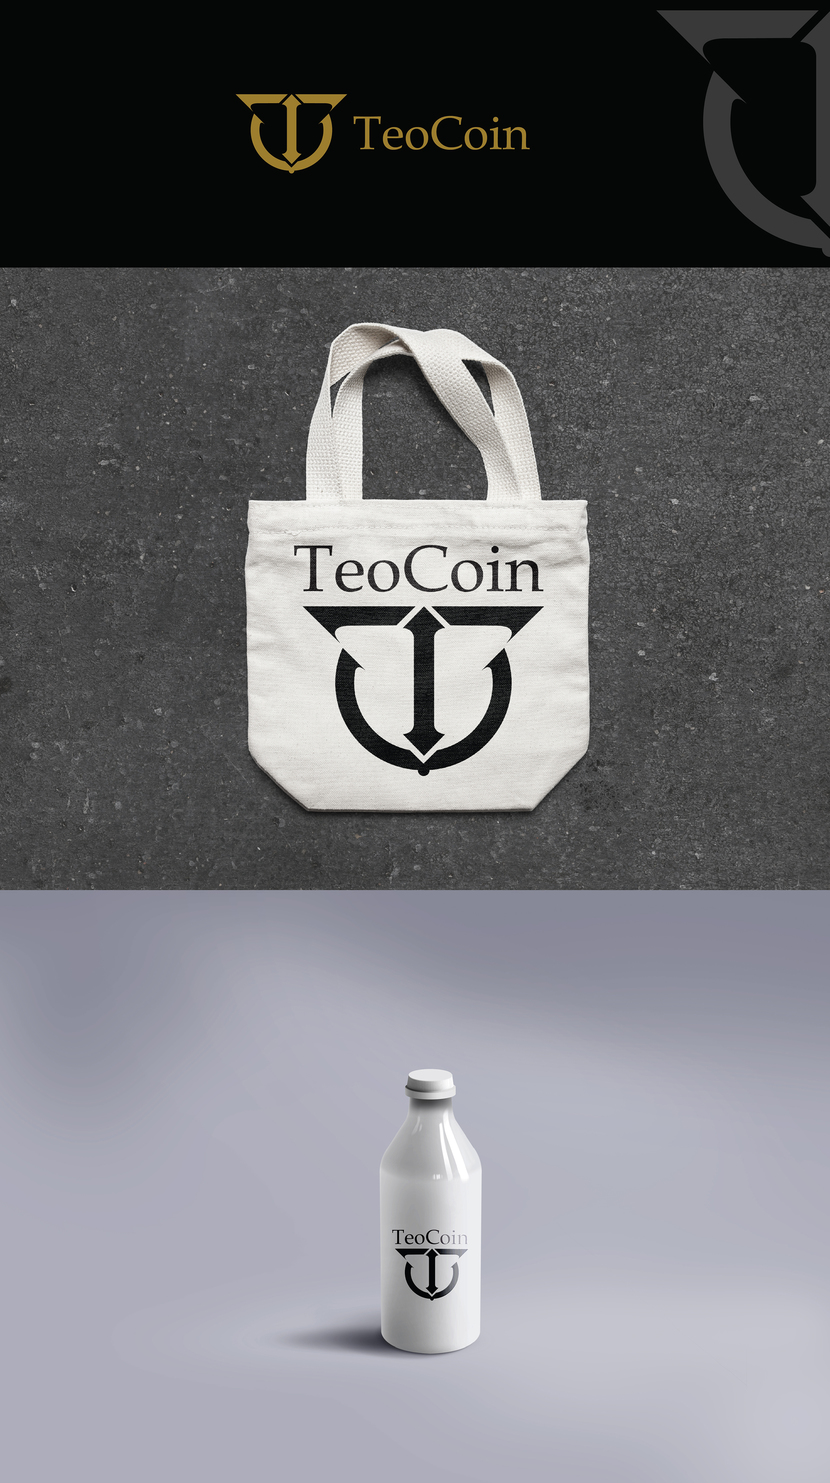 TeoCoin_2
идея заключается в сочетании образов человека, круга защиты вокруг него, связи двух миров верхнего и нижнего. - Создание фирменного стиля для новой криптовалюты TeoCoin